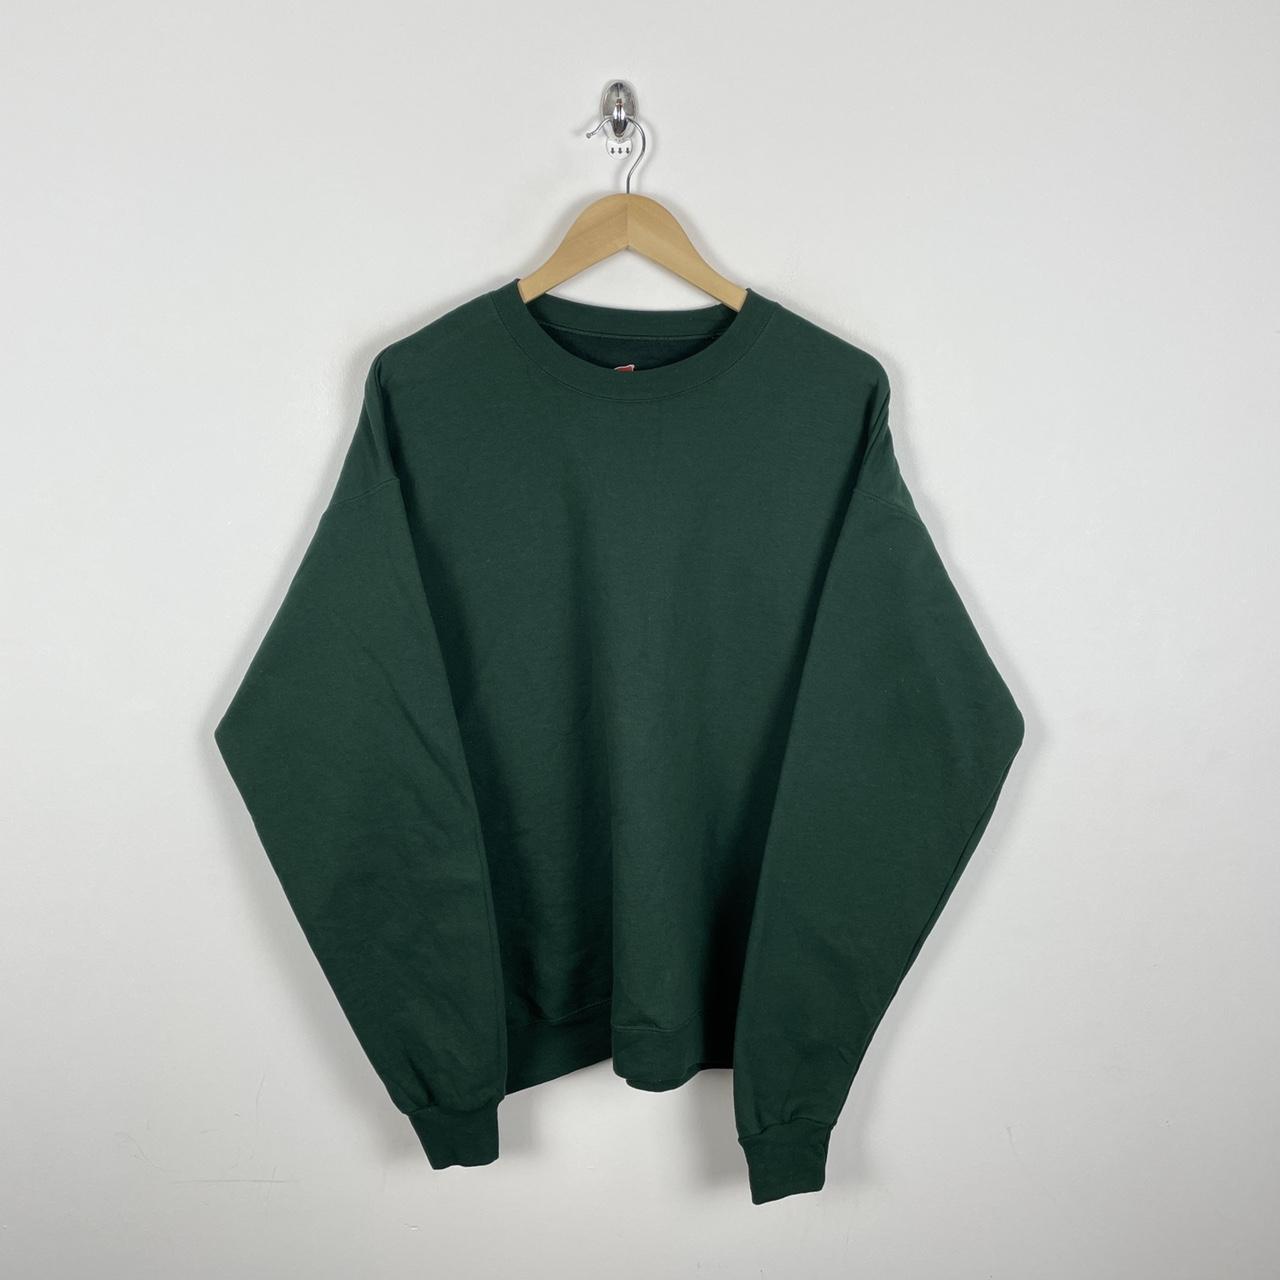 Blank Sweatshirt Hanes Green Colour Way Ladies... - Depop